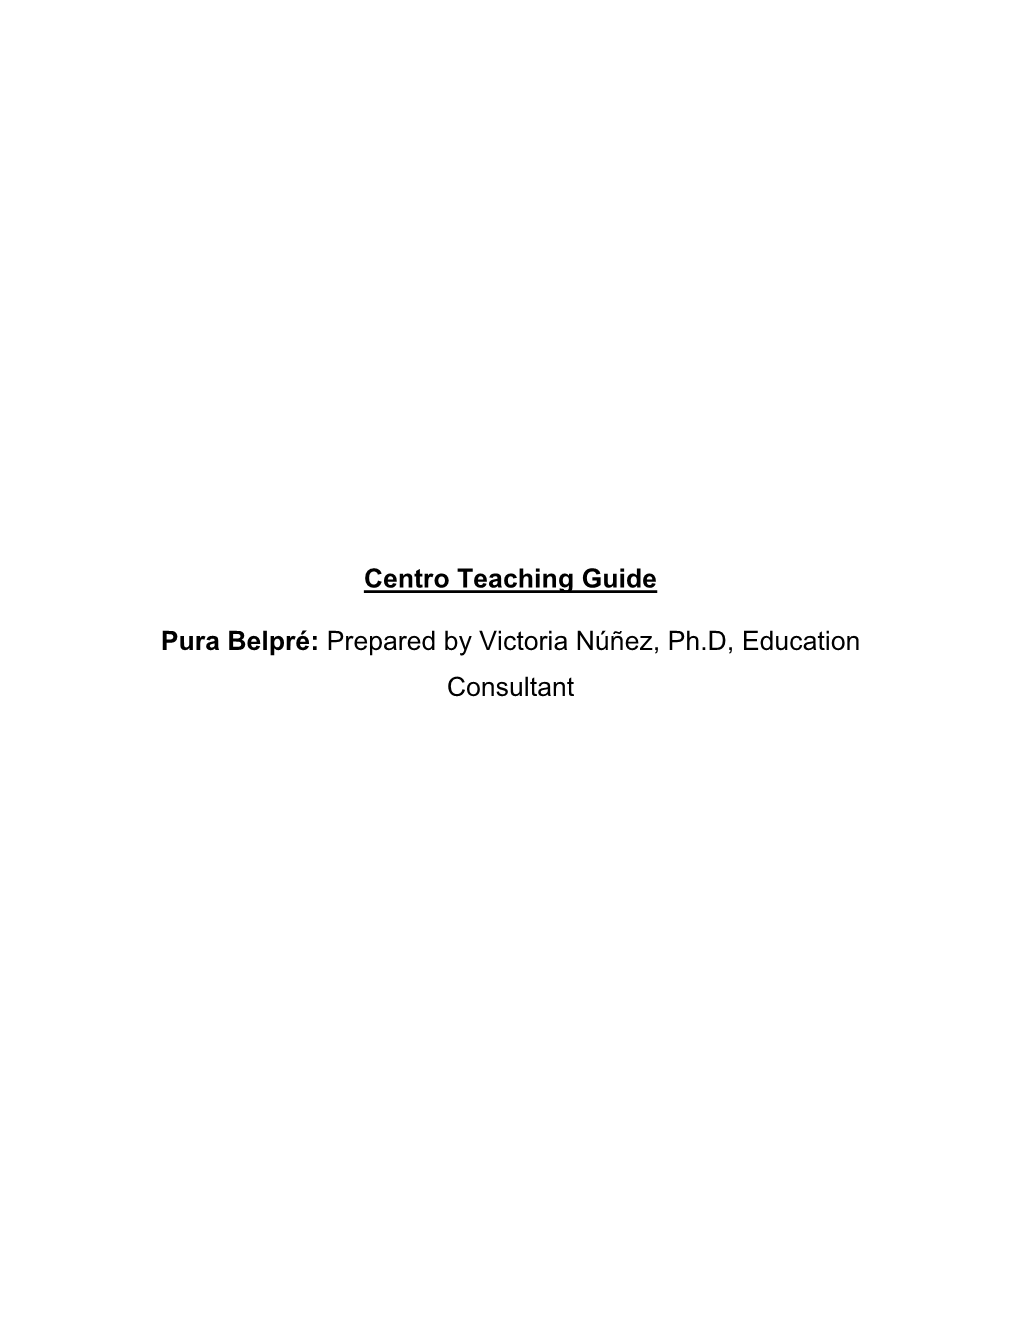 Centro Teaching Guide Pura Belpré